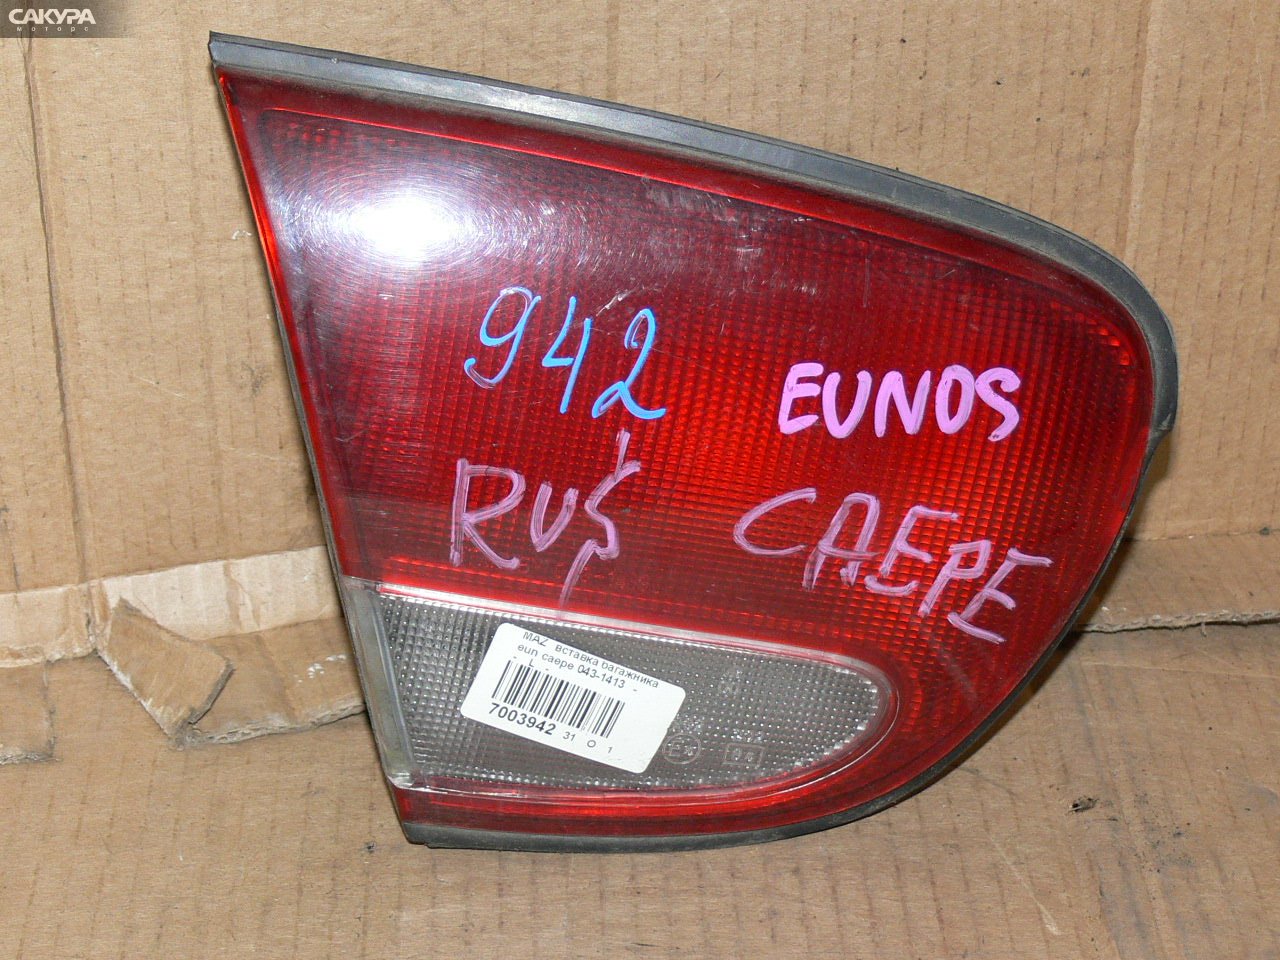 Фонарь вставка багажника левый Mazda Eunos 500 CAEPE 043-1413: купить в Сакура Иркутск.